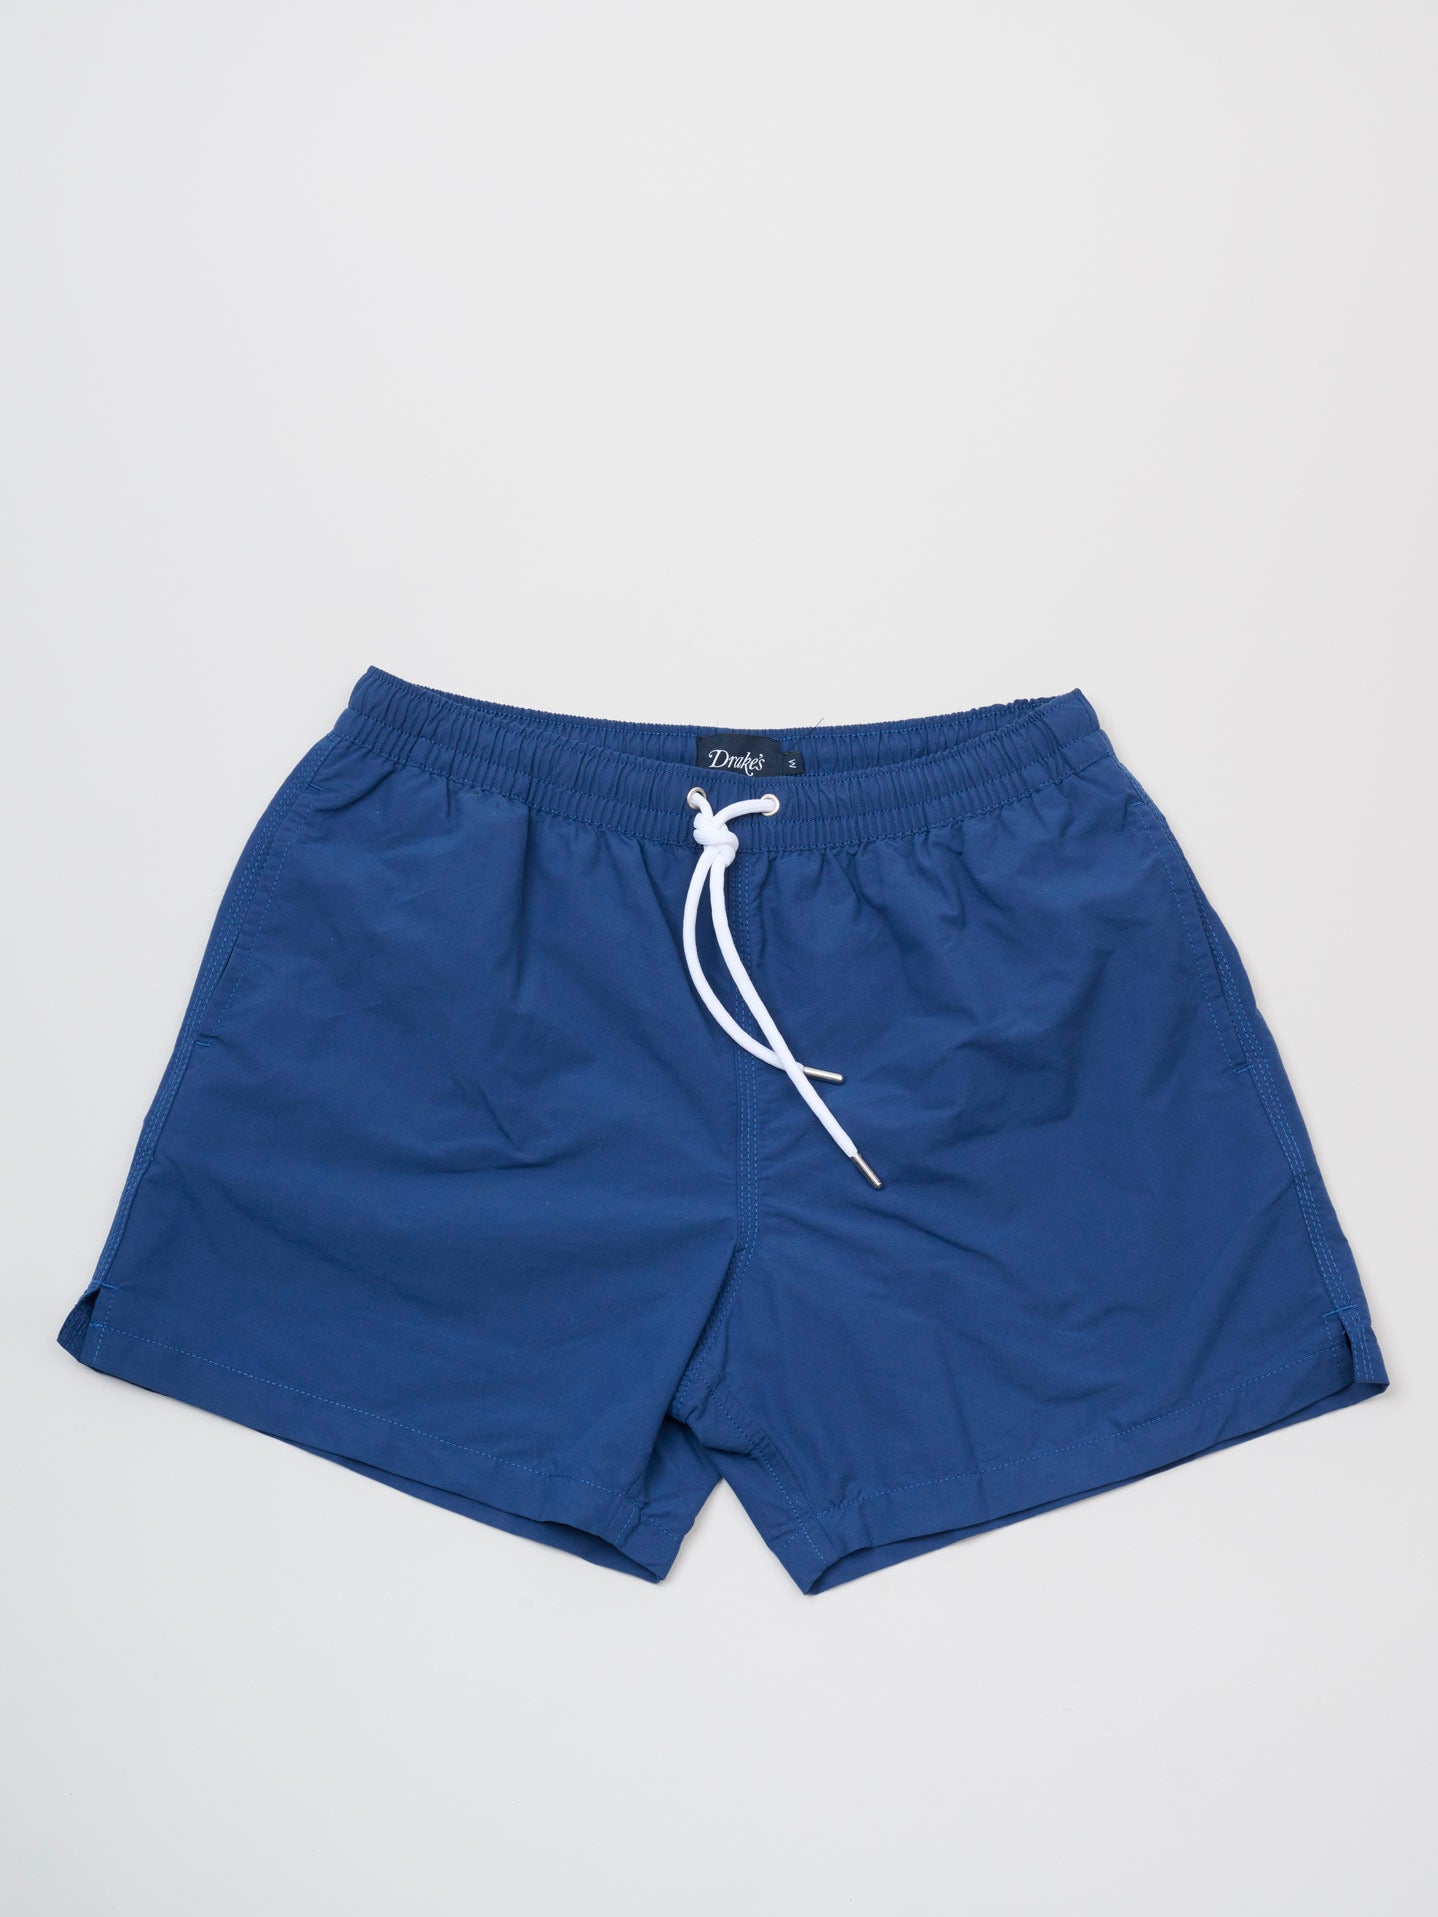 Nylon Drawstring Swim Shorts, Navy